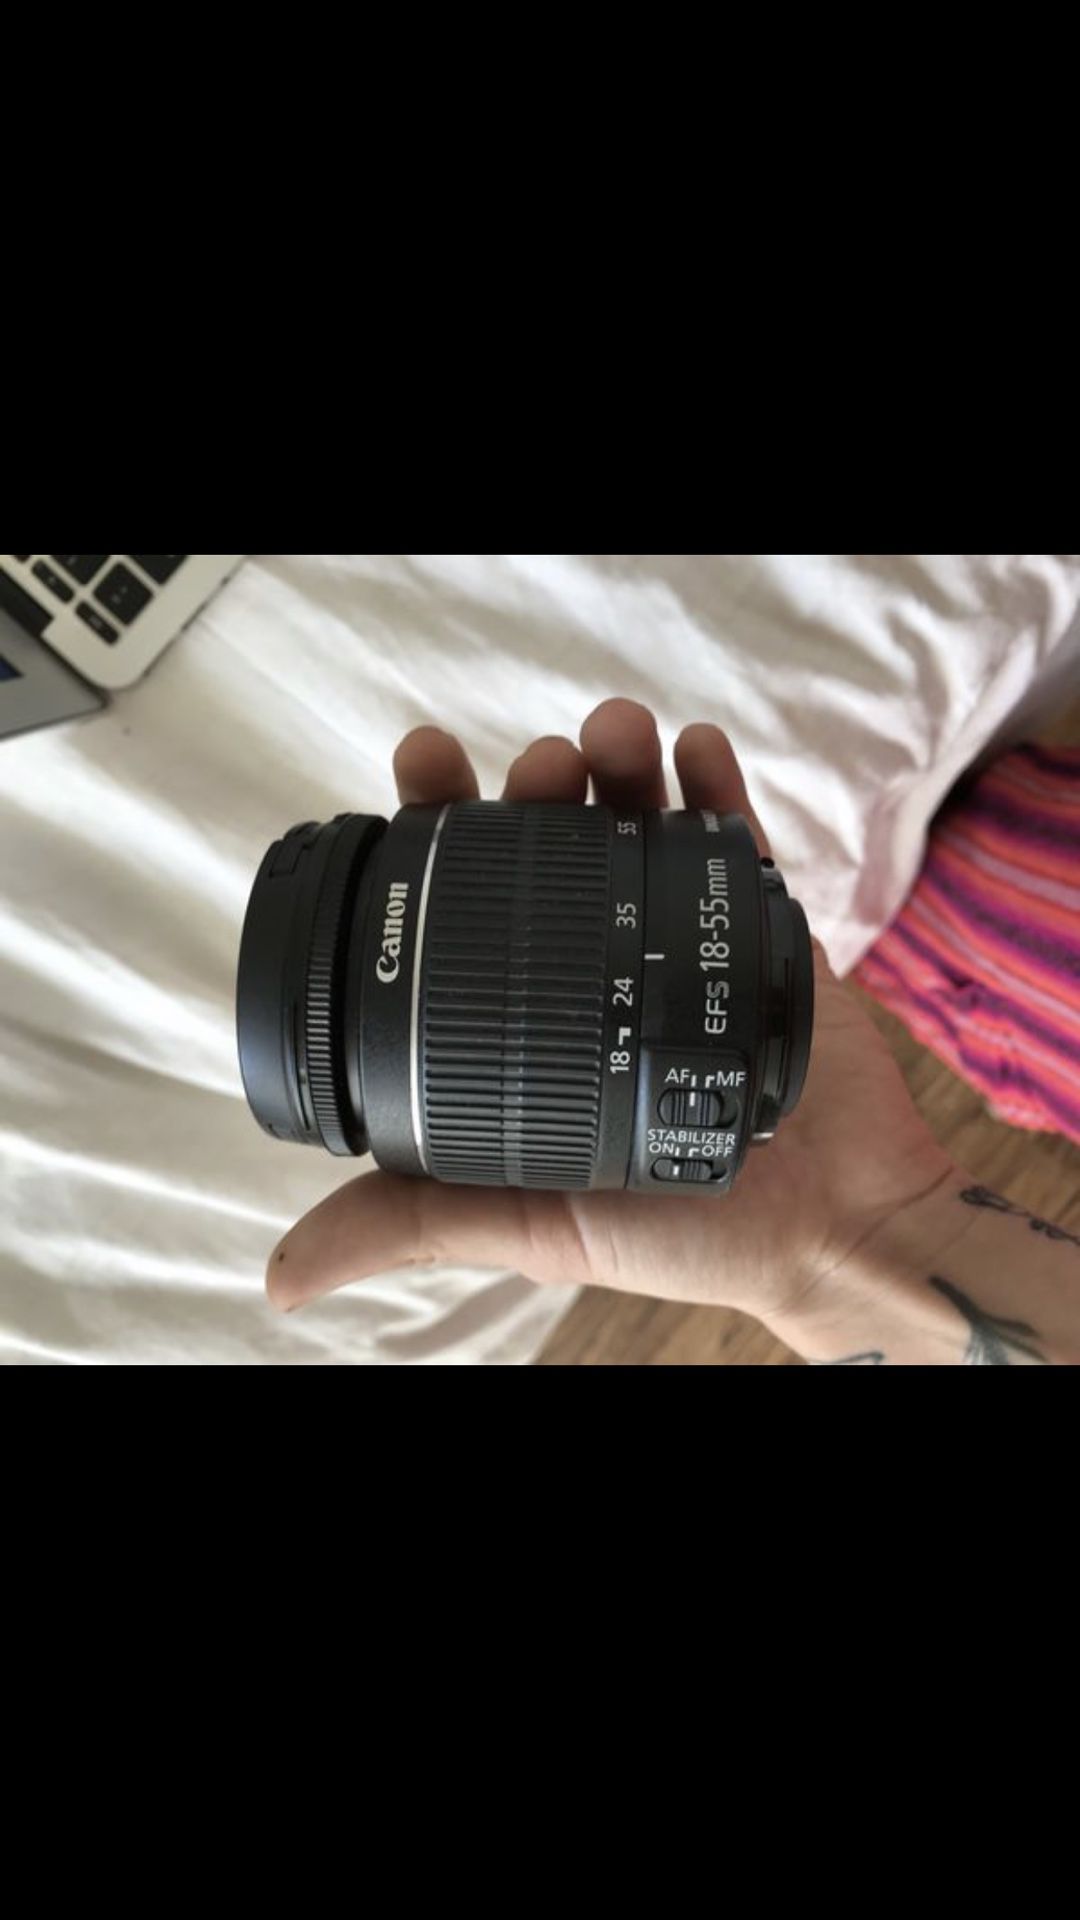 Canon camera lense